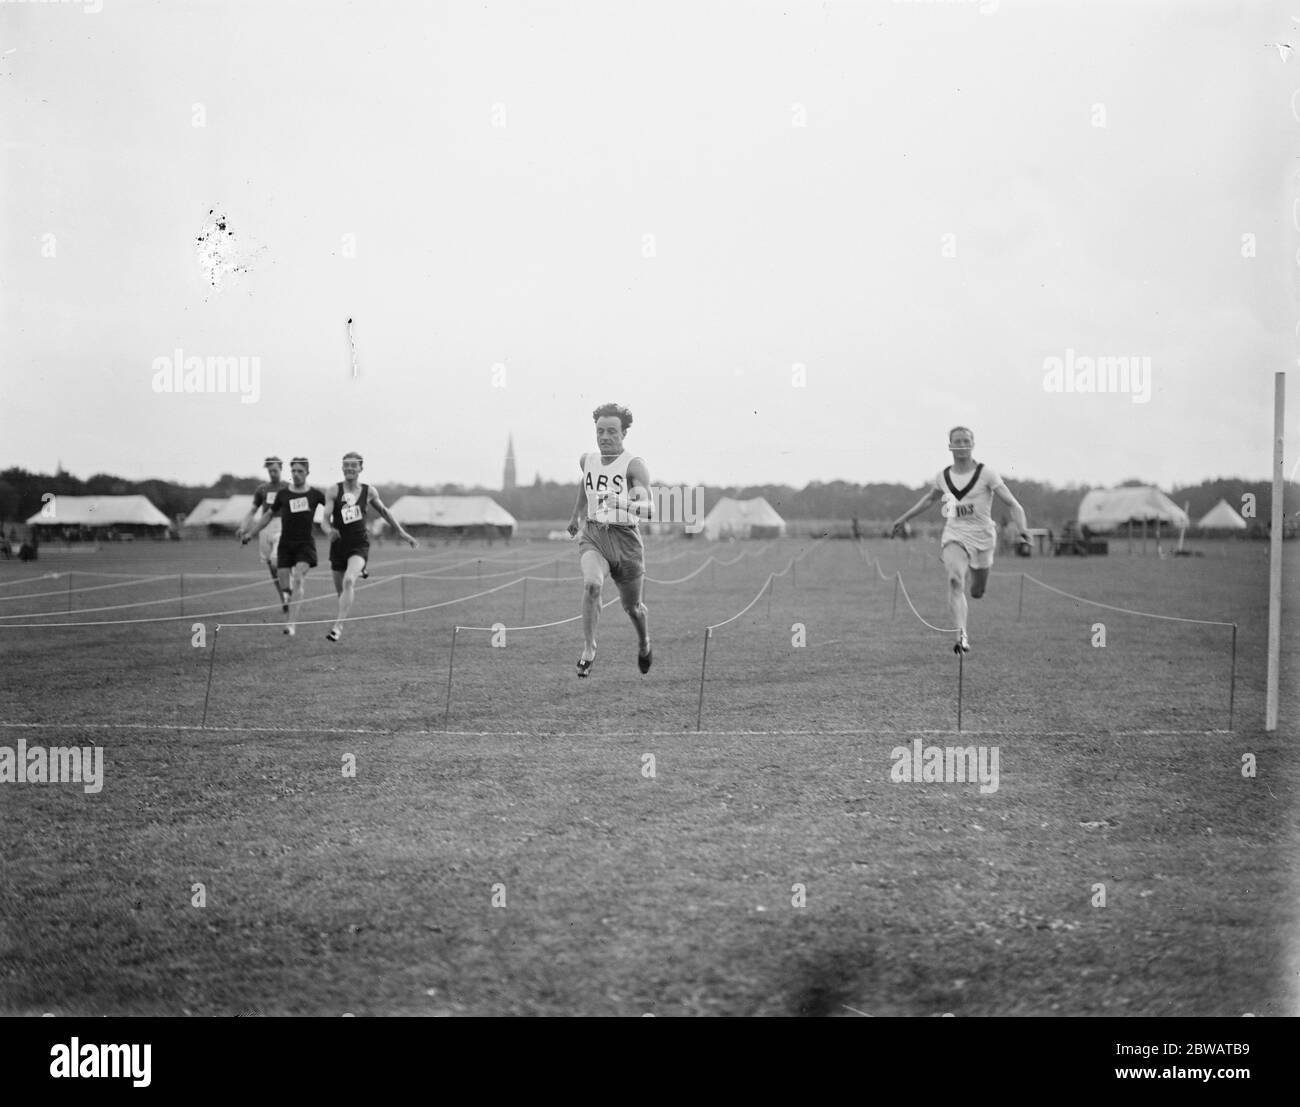 Army Athletics Championship in Aldershot W R Applgarth (Armee des Schwarzen Meeres) der Weltmeister, der Sieg der 100 Meter Cross Heat 28 August 1919 Stockfoto